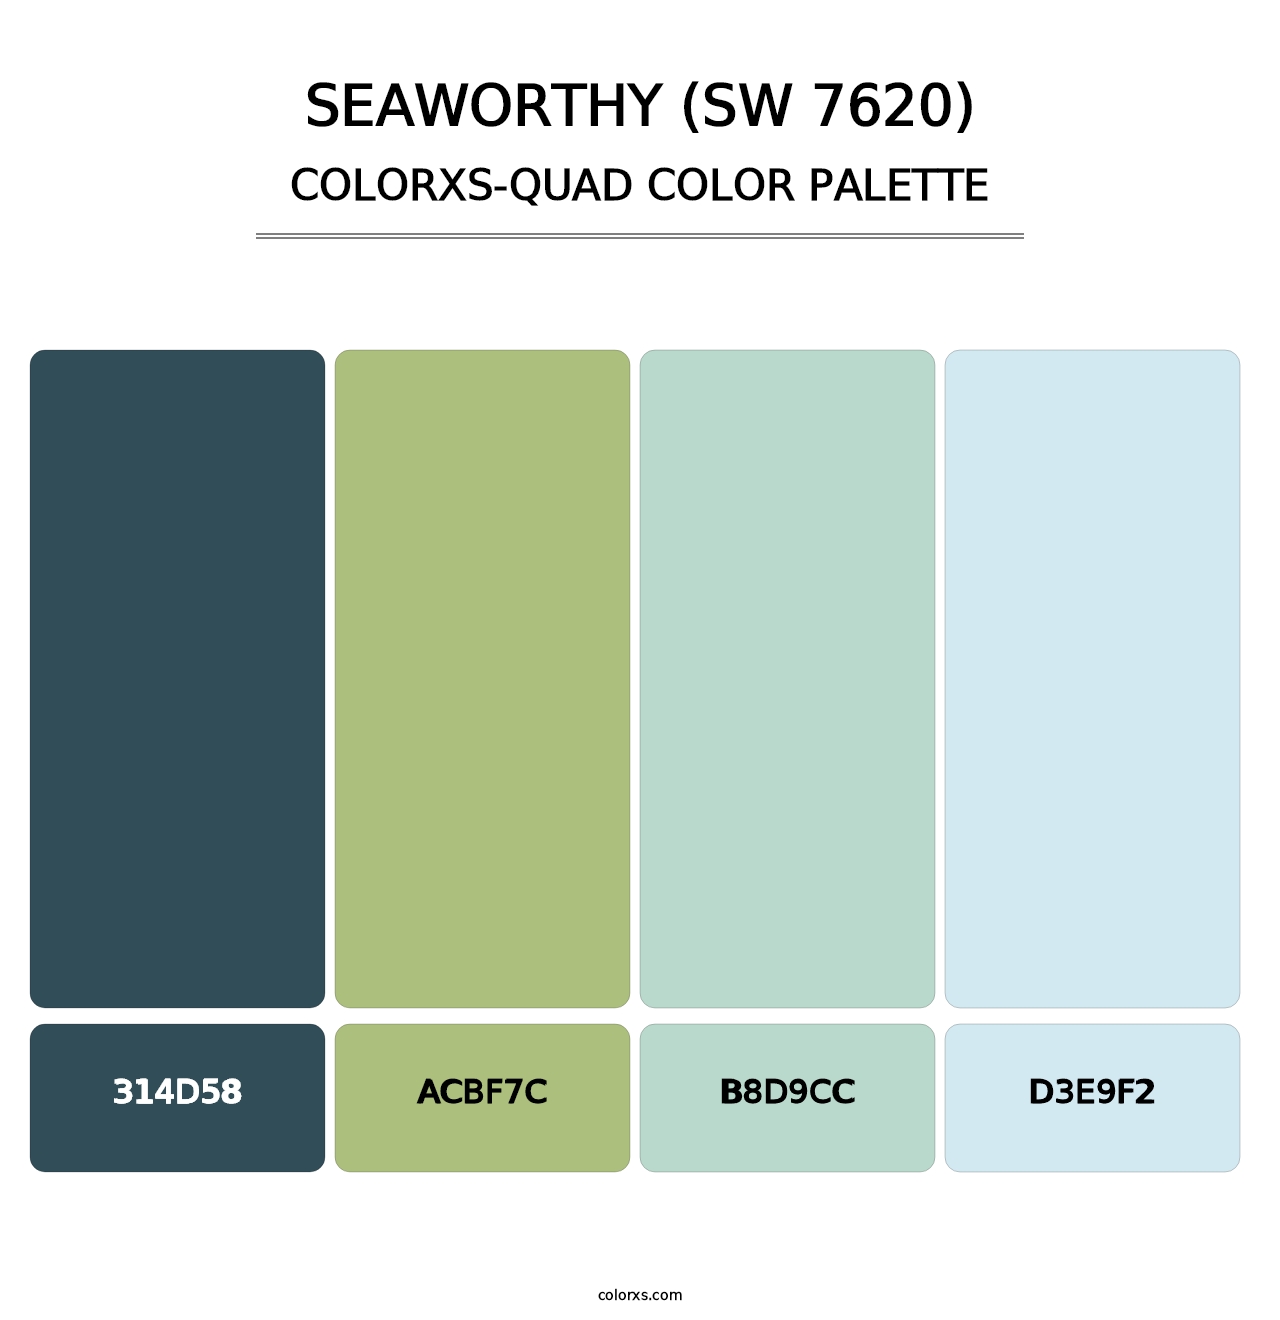 Seaworthy (SW 7620) - Colorxs Quad Palette